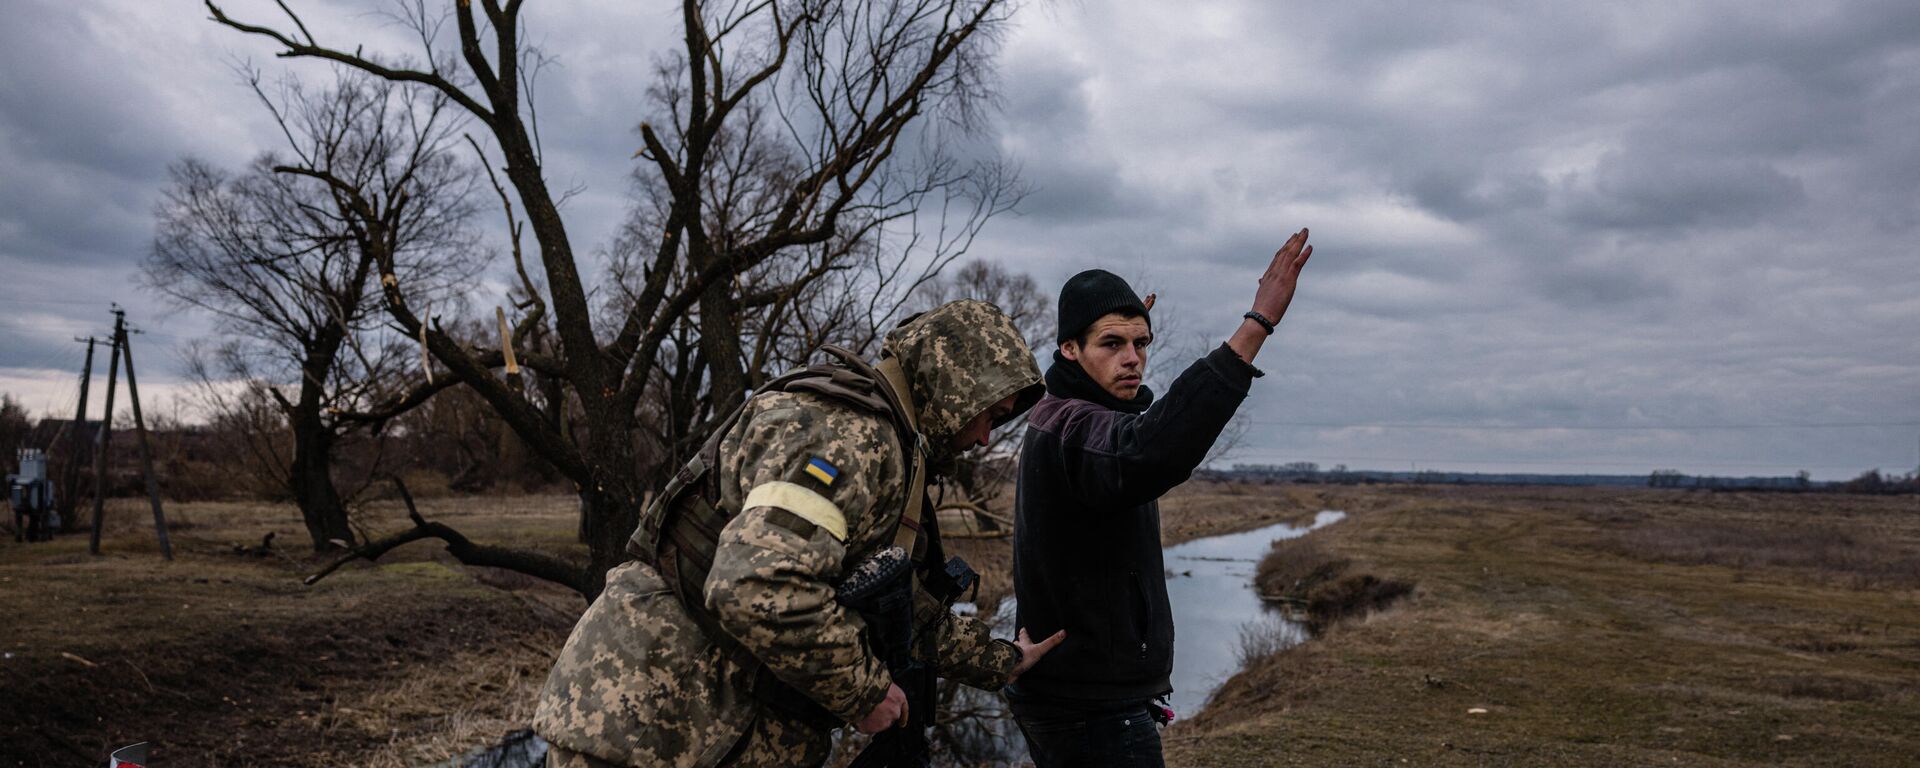 Военнослужащий ВСУ обыскивает мирного жителя в селе к востоку от города Бровары, Украина  - Sputnik Latvija, 1920, 19.03.2022